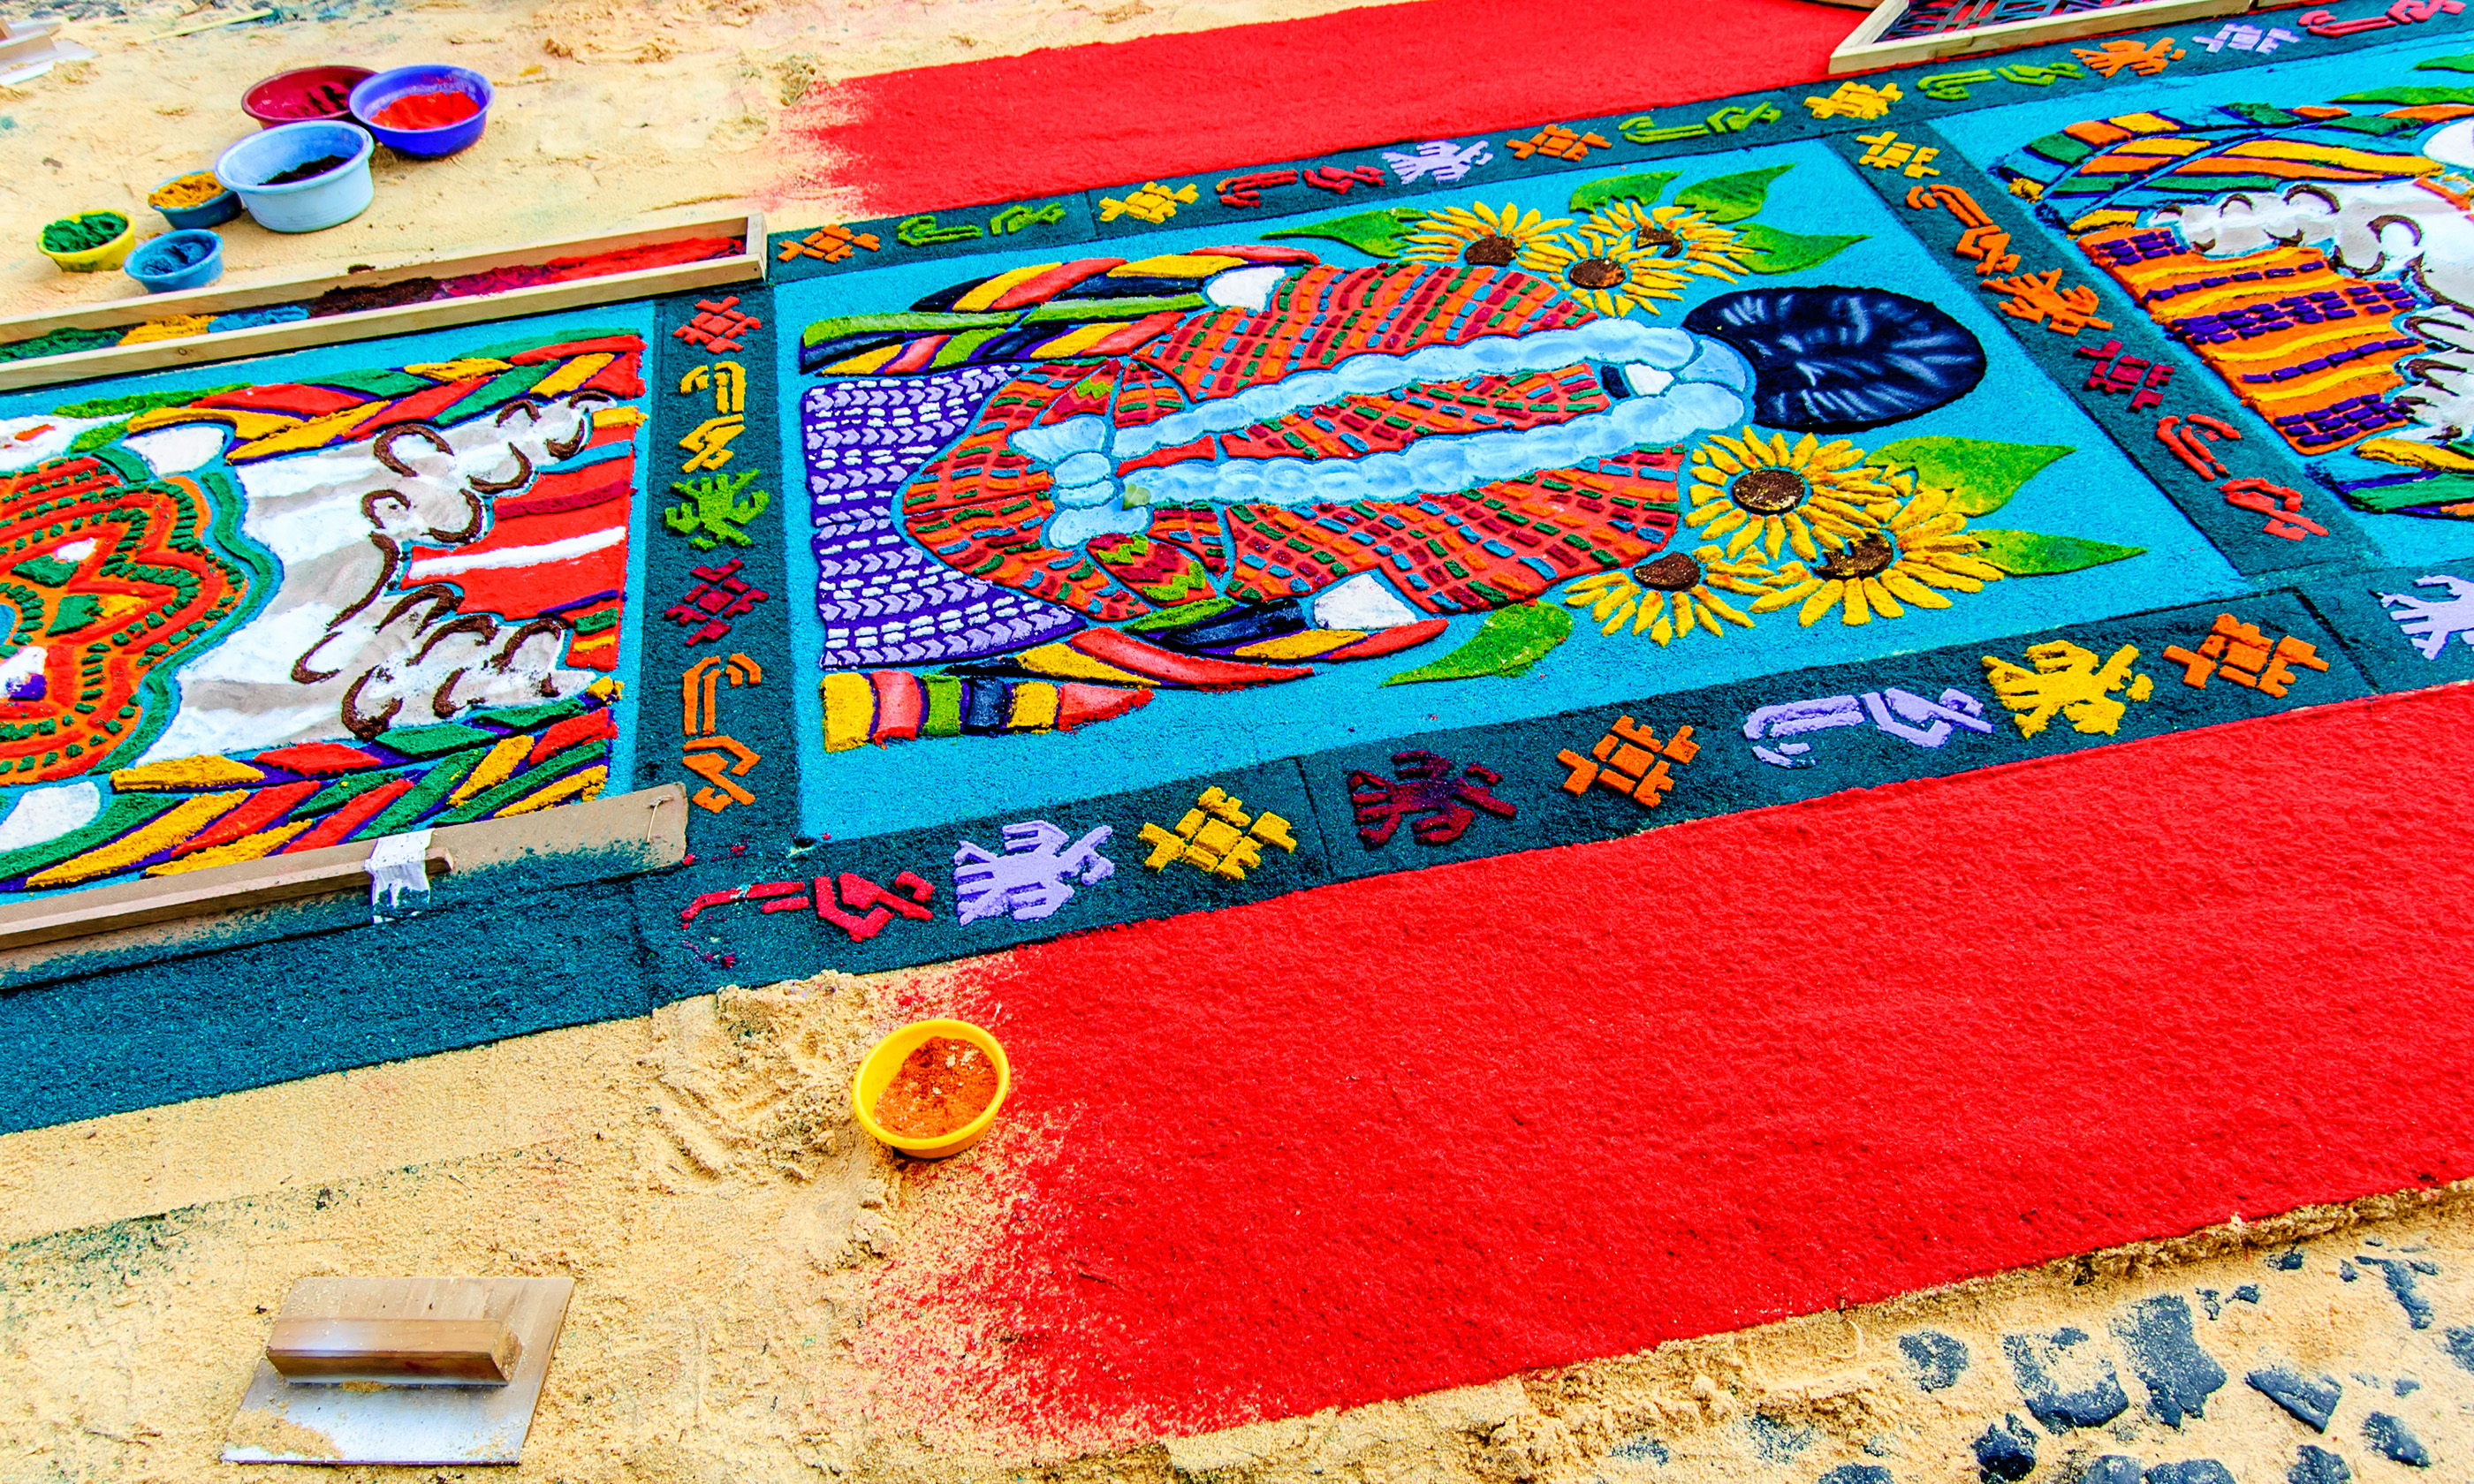 Palm Sunday carpet, Antigua (Shutterstock.com)